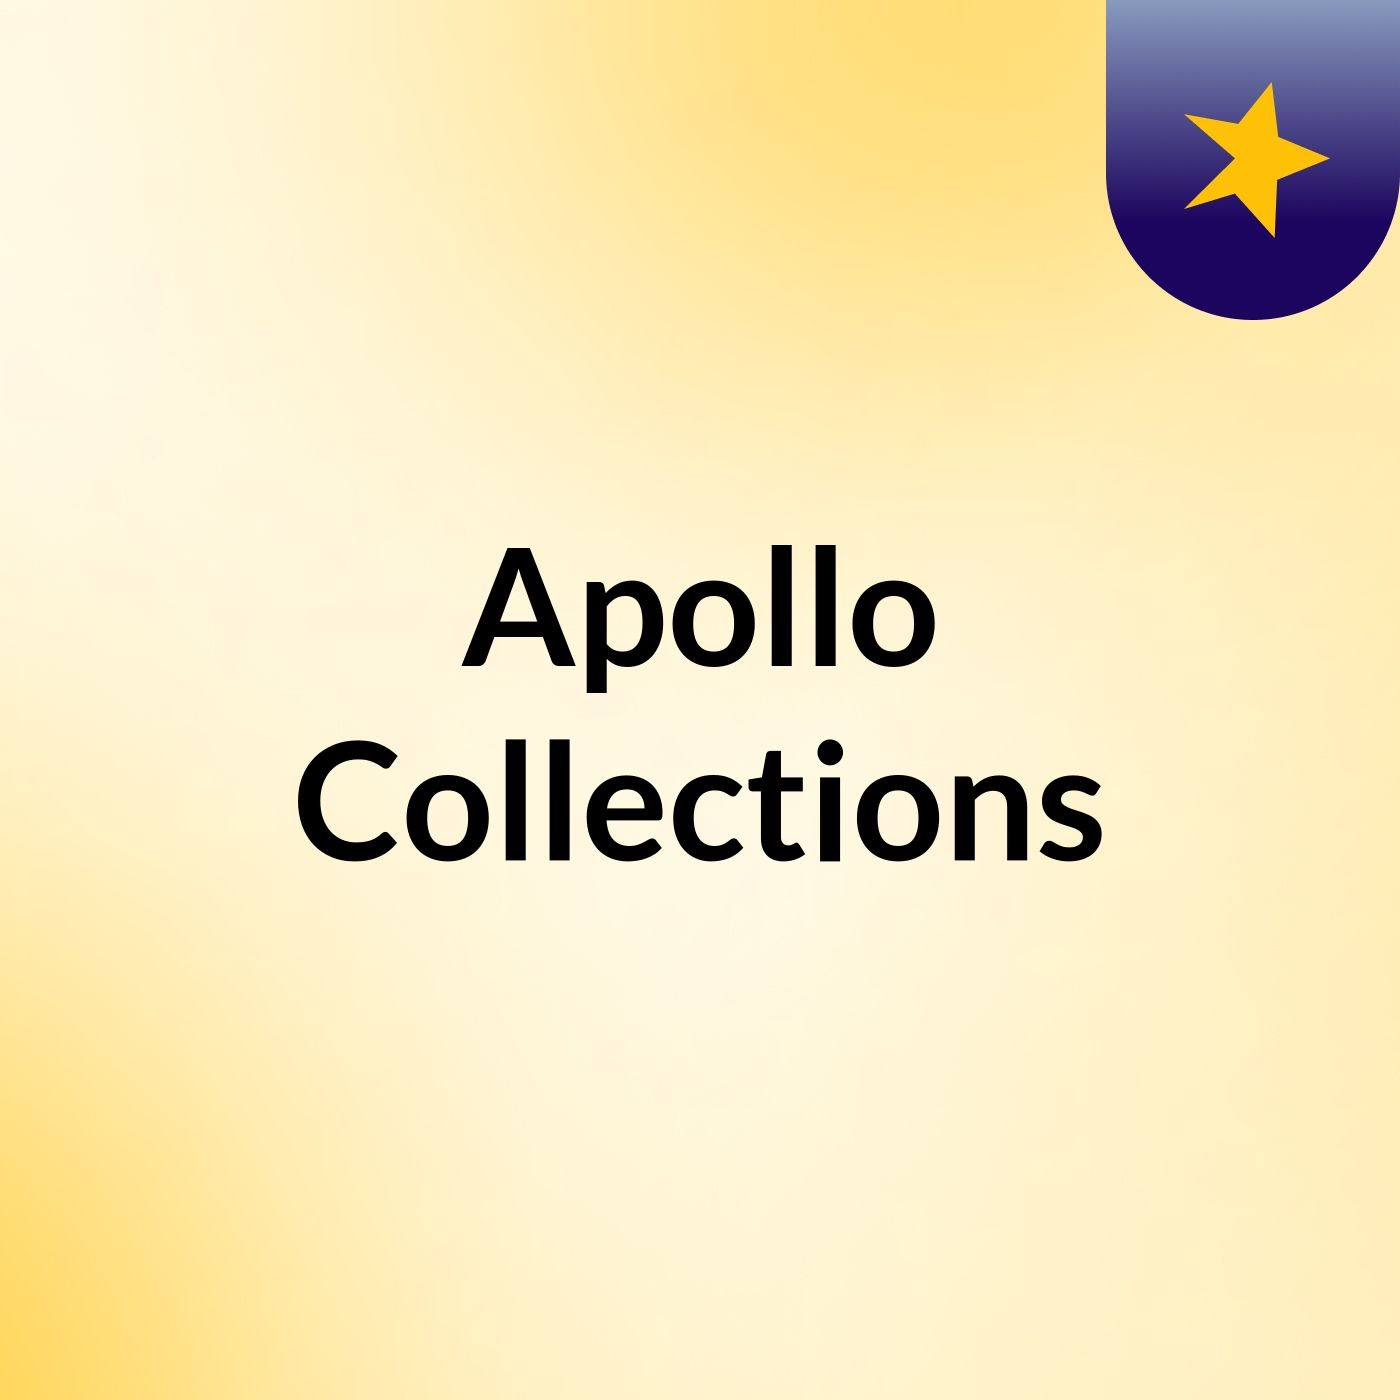 Apollo Collections